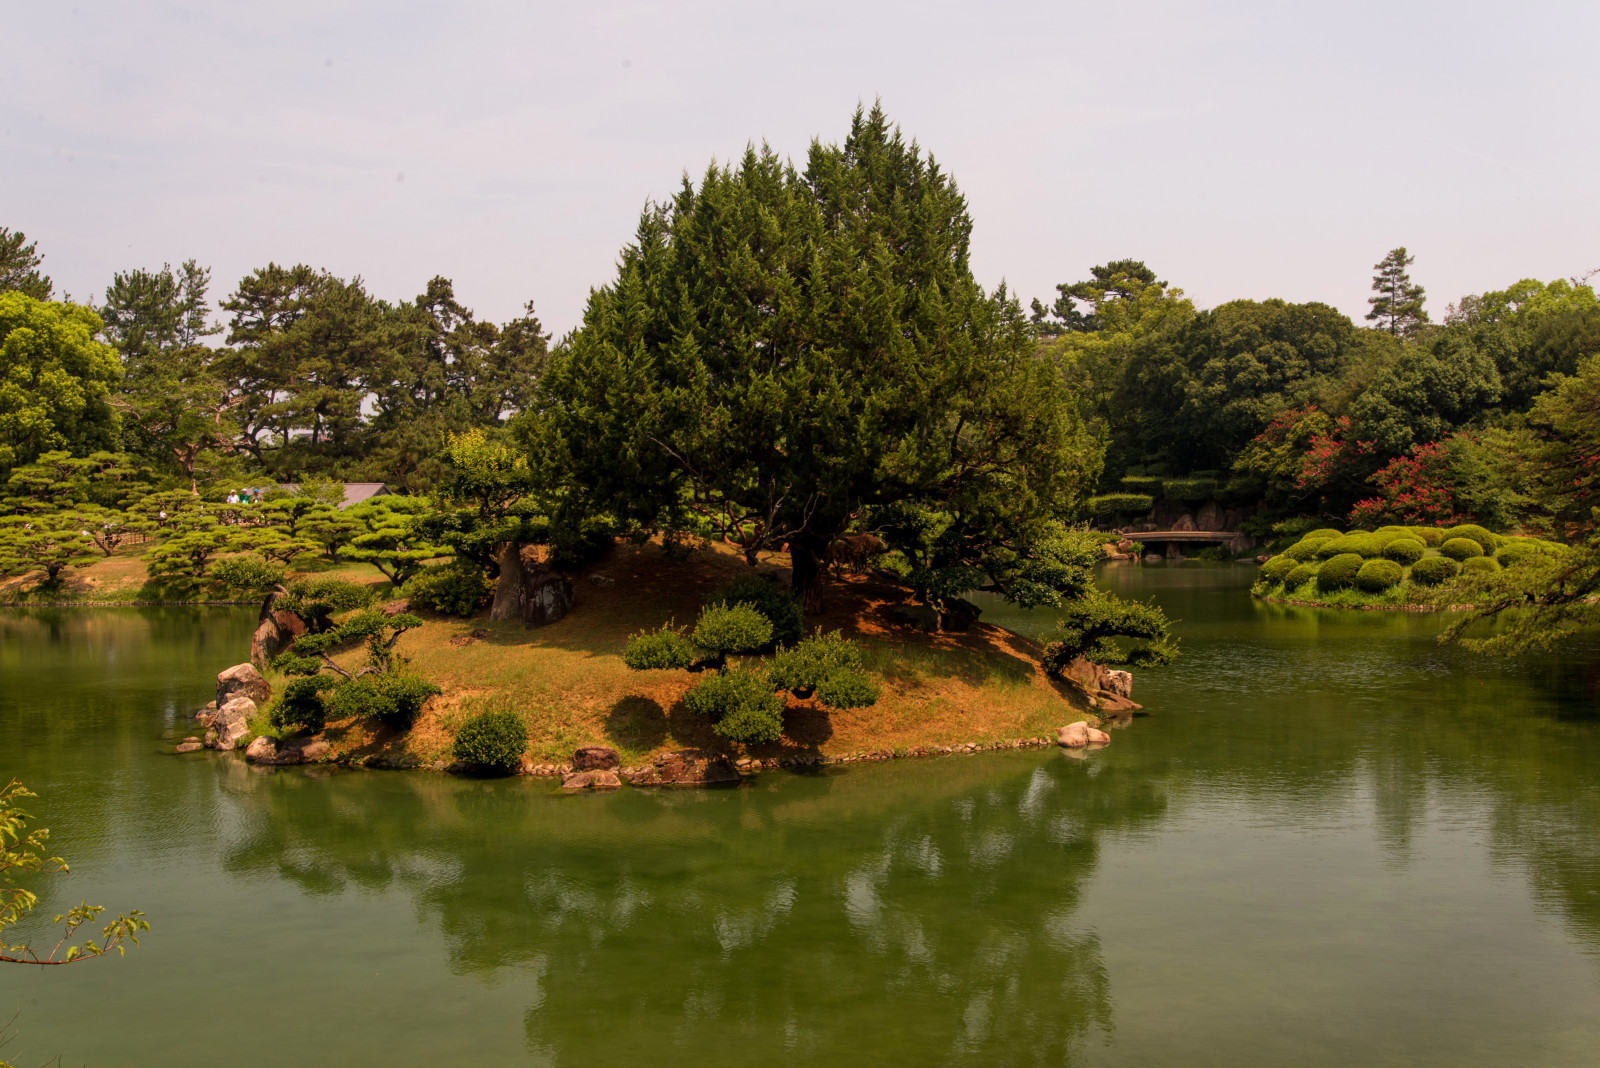 ธรรมชาติ, สวน, ภูมิประเทศ, ต้นไม้, ประเทศญี่ปุ่น, ภาพถ่าย, บ่อน้ำ, Takamatsu